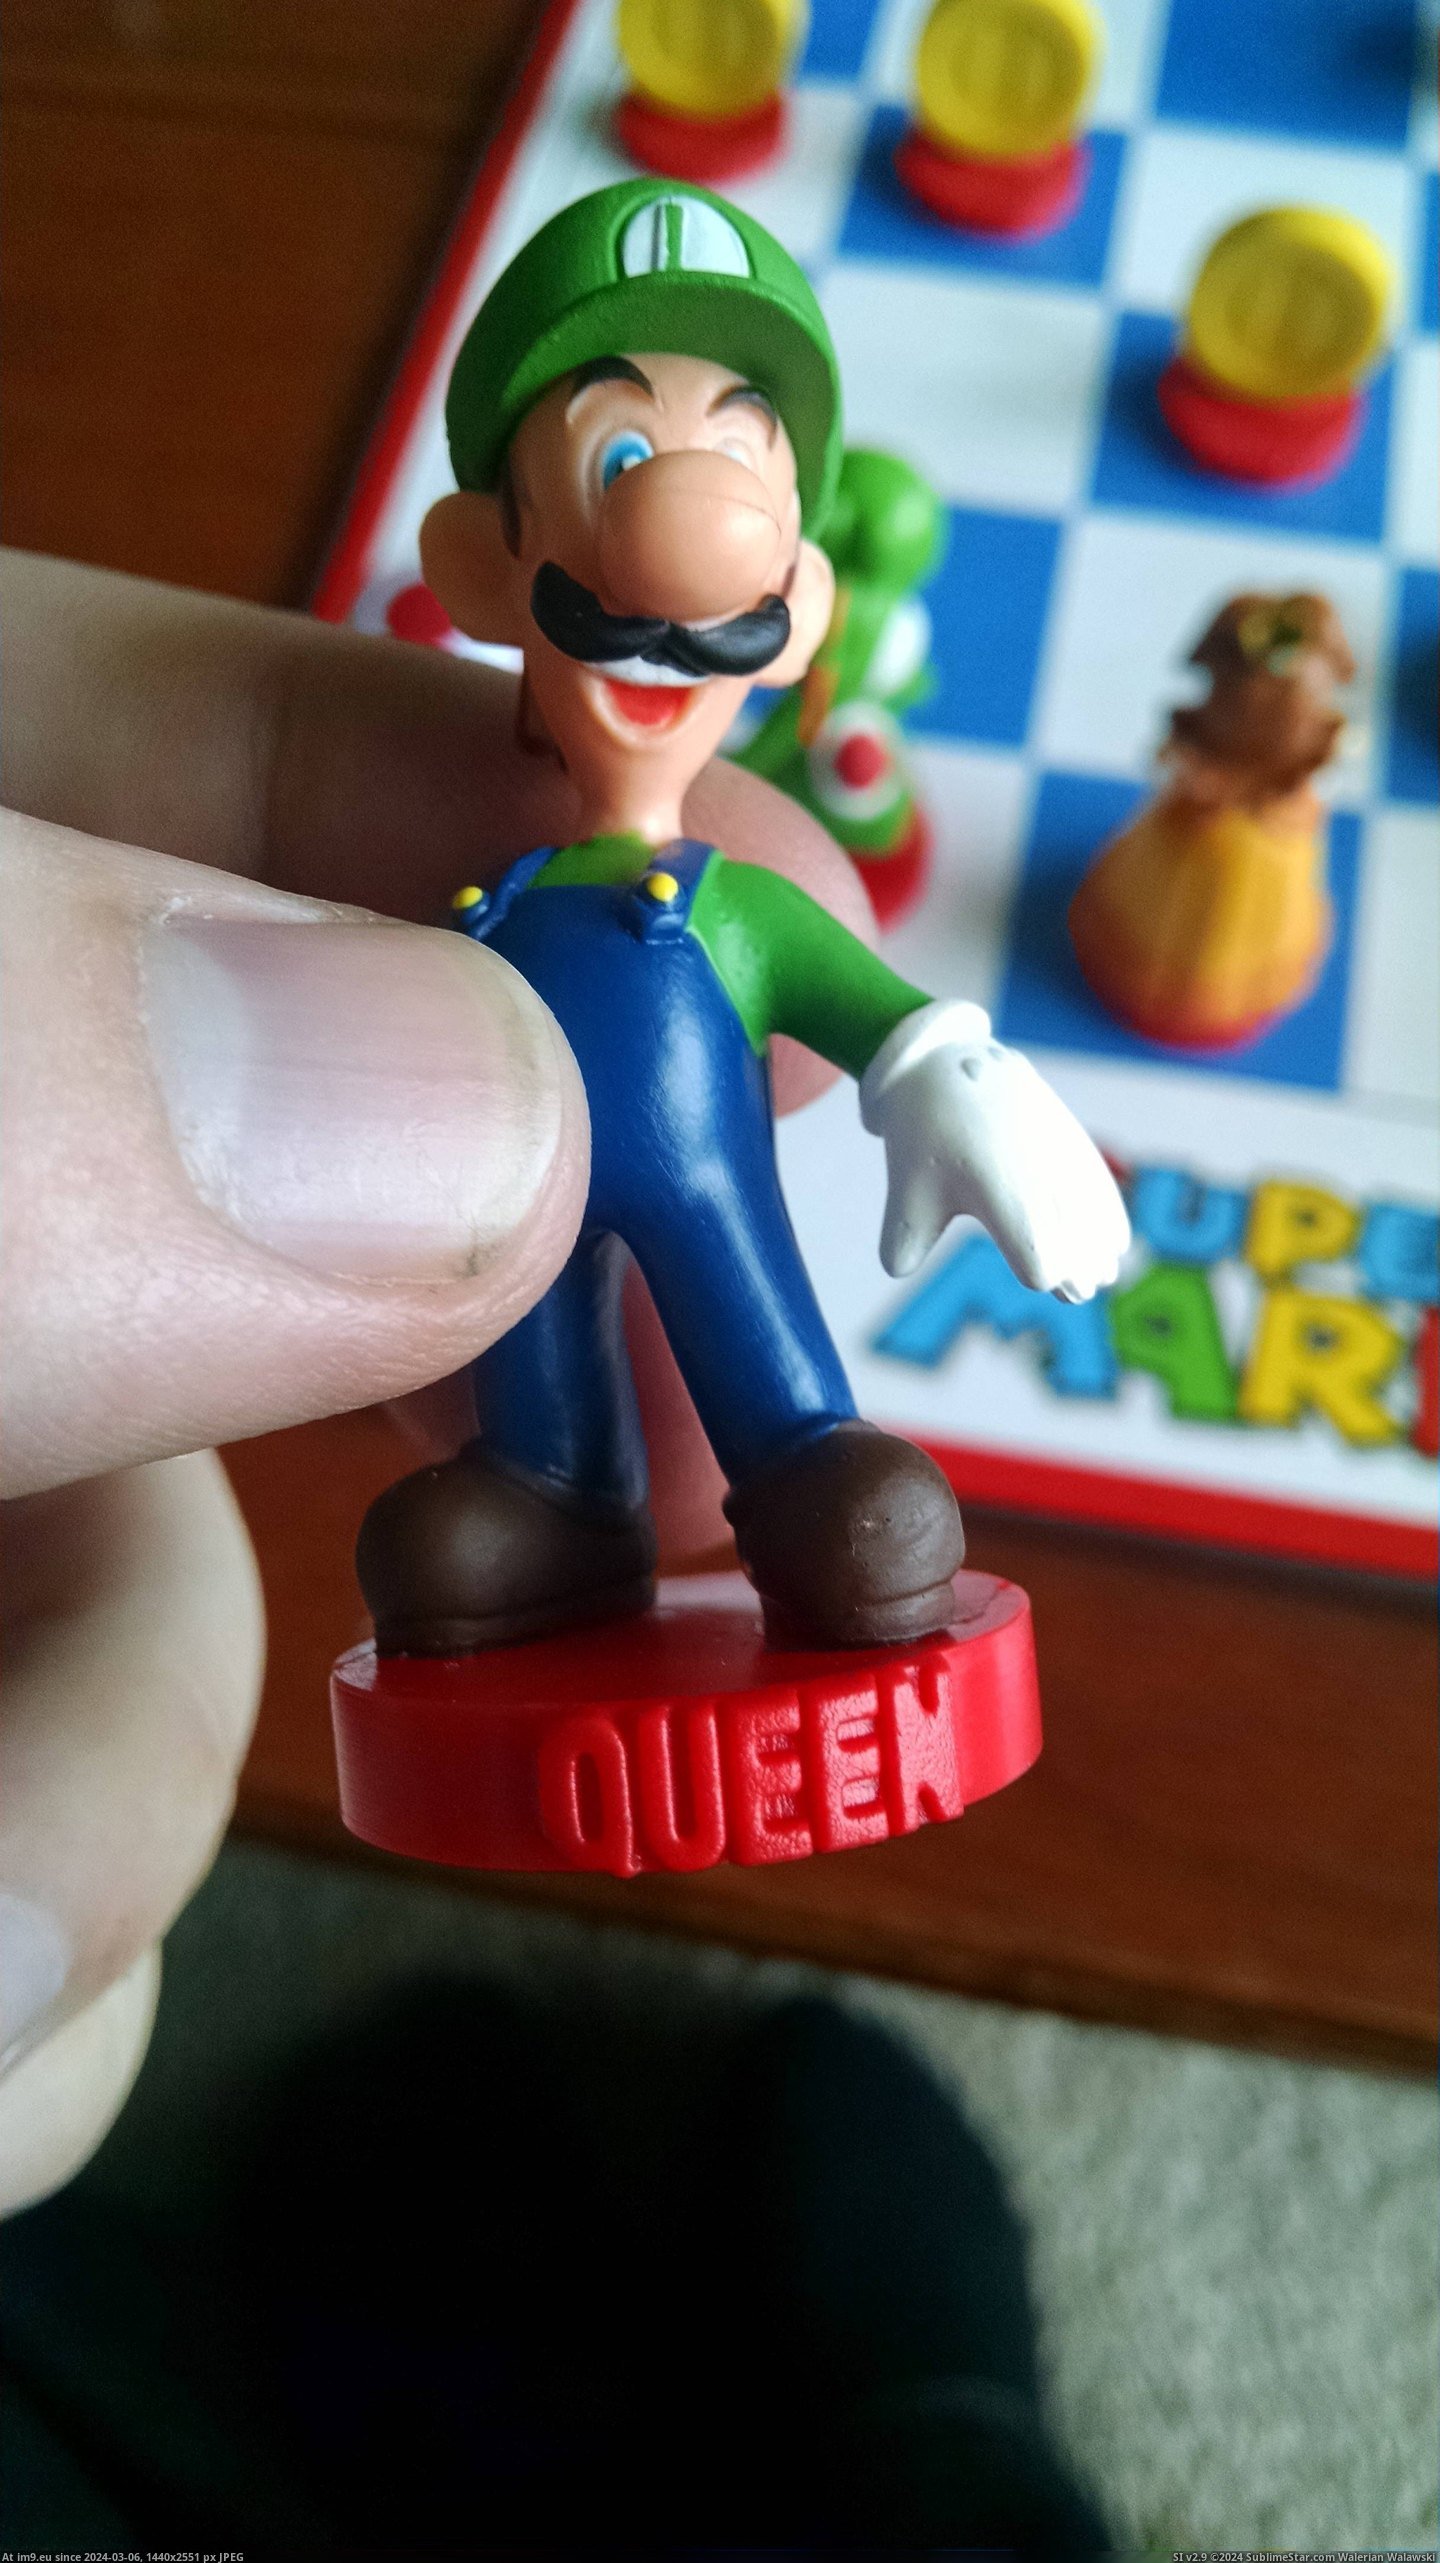 #Gaming #Sex #Poor #Chess #Luigi #Super #Mario [Gaming] Super Mario chess set. Poor Luigi... Pic. (Изображение из альбом My r/GAMING favs))